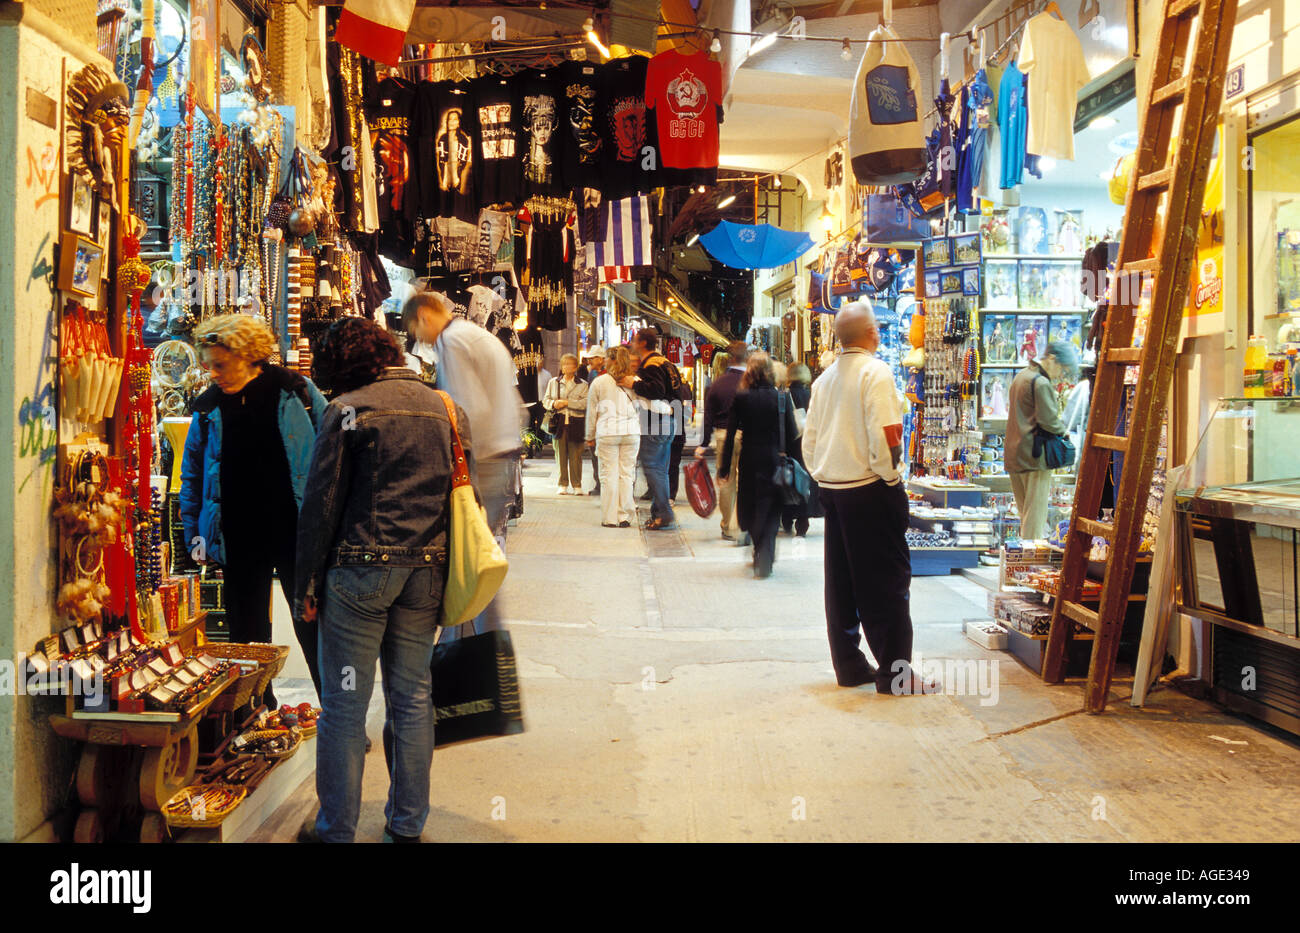 Grèce Athènes Shopping le long Pandrosou street qui a de nombreux magasins d'offrir à la vente des souvenirs Banque D'Images